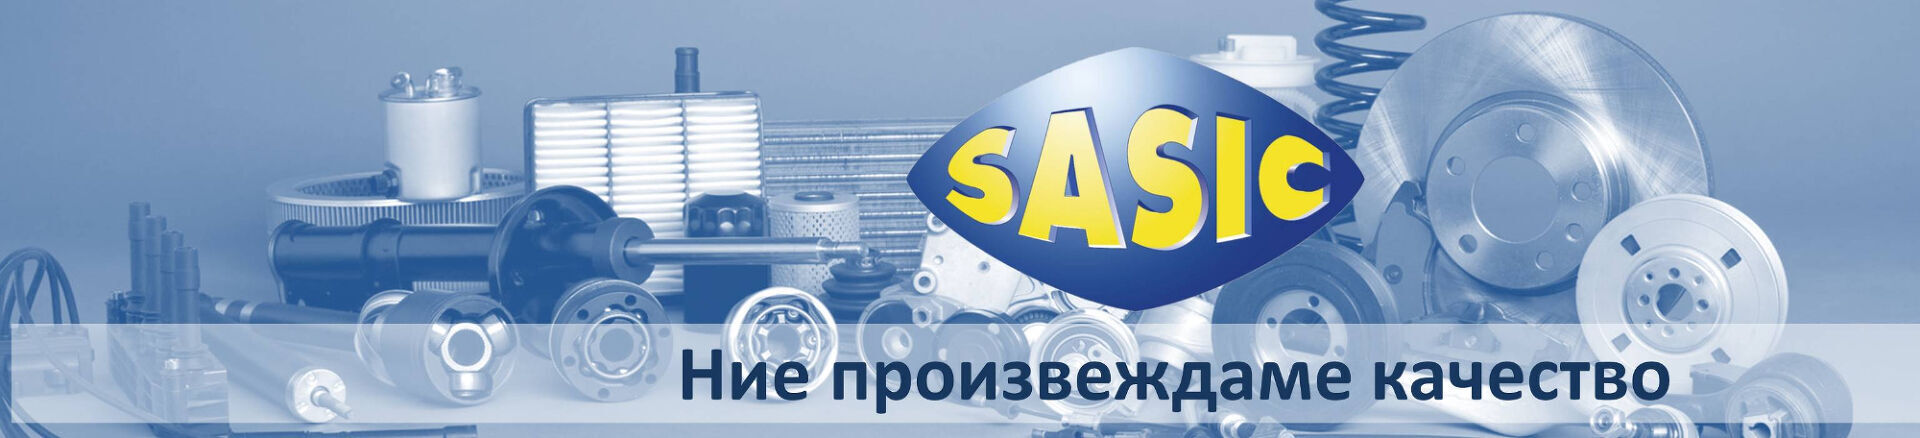  Водещ акцент в производството и дистрибуцията на автомобилни части от SASIC, отстояван в продължение на повече от 70 години. Днес фирмата принадлежи към SEVTI Group, след като 25 години е била част от LUCAS. Фабриката и логистичният център на SASIC обслужват хиляди дистрибутори в над 80 страни от всички континенти.